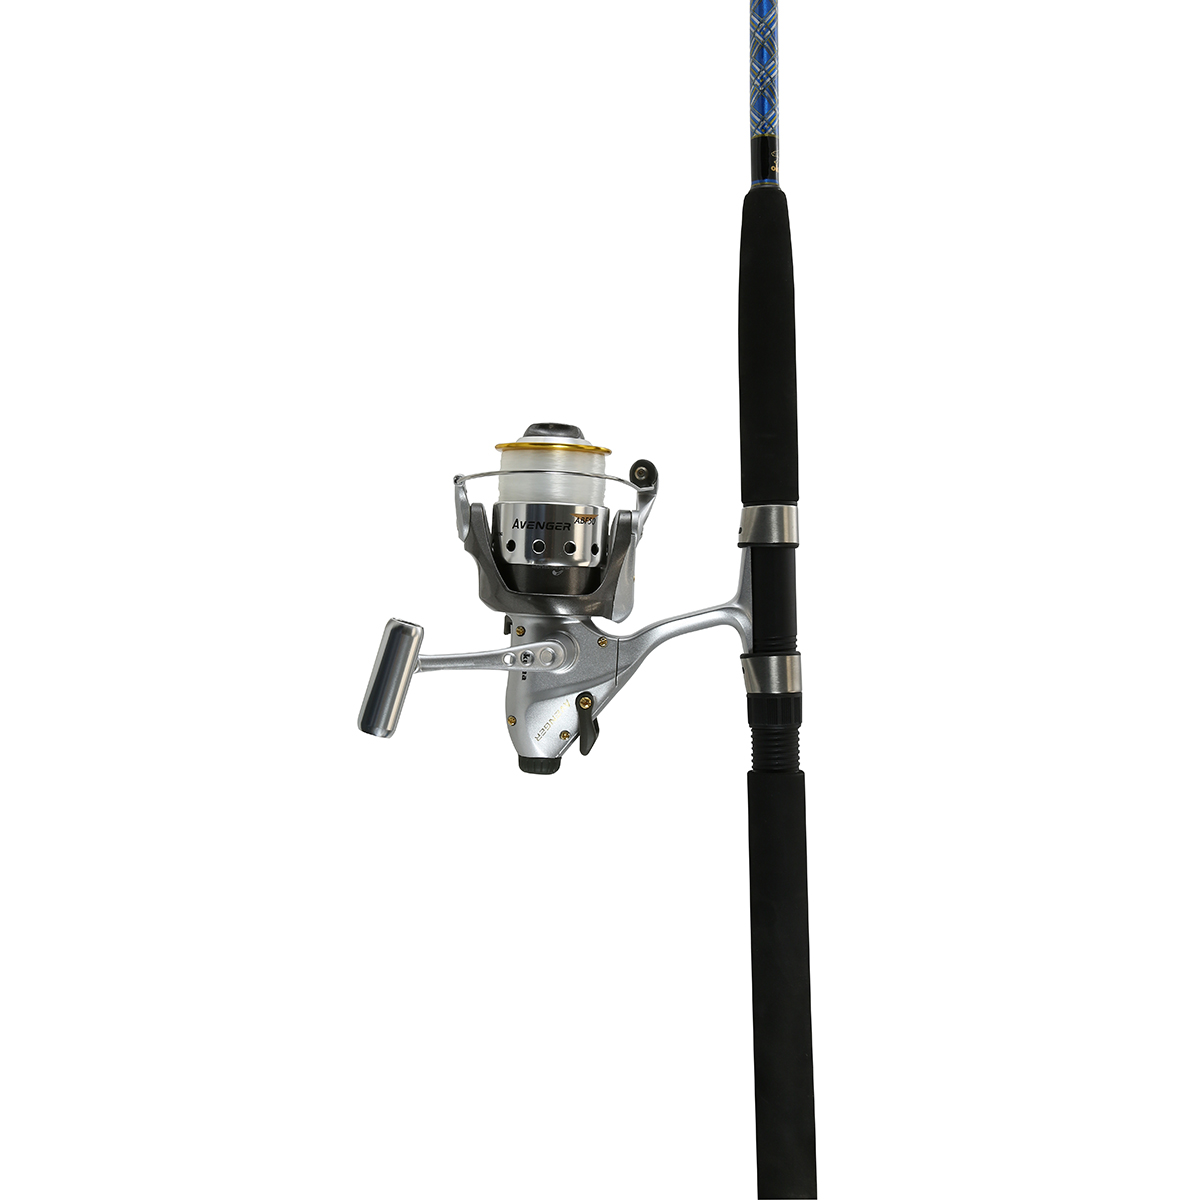 スピニングセット | OKUMA Fishing Rods and Reels - OKUMA FISHING